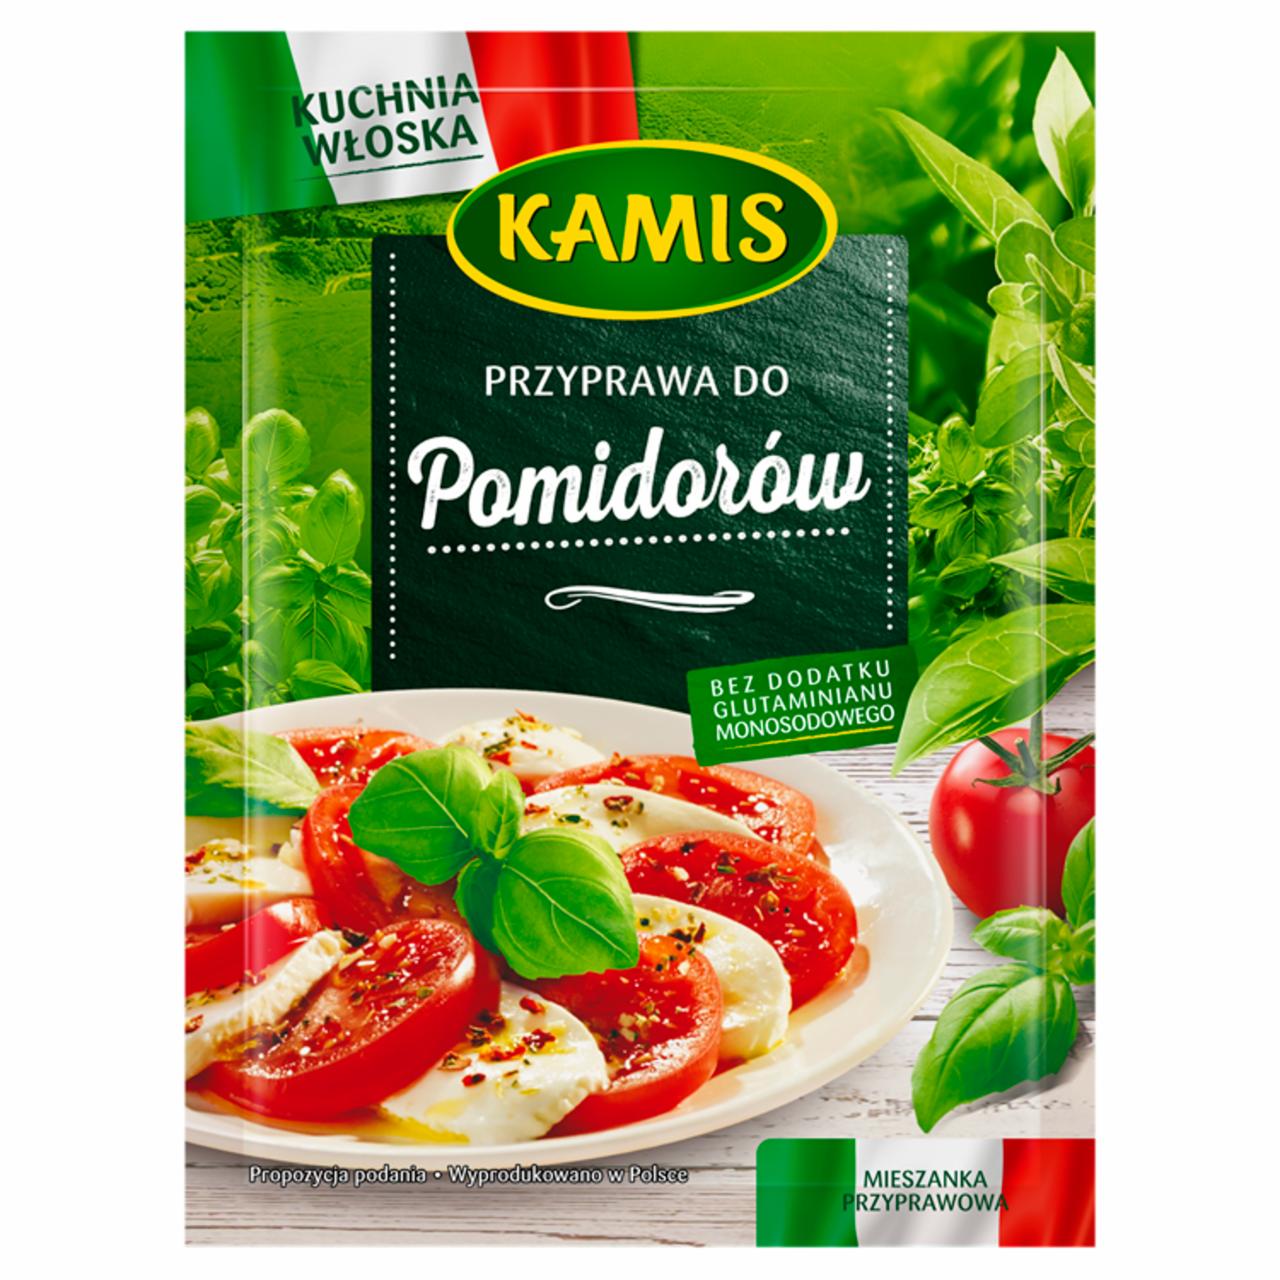 Zdjęcia - Kamis Kuchnia włoska Przyprawa do pomidorów Mieszanka przyprawowa 15 g